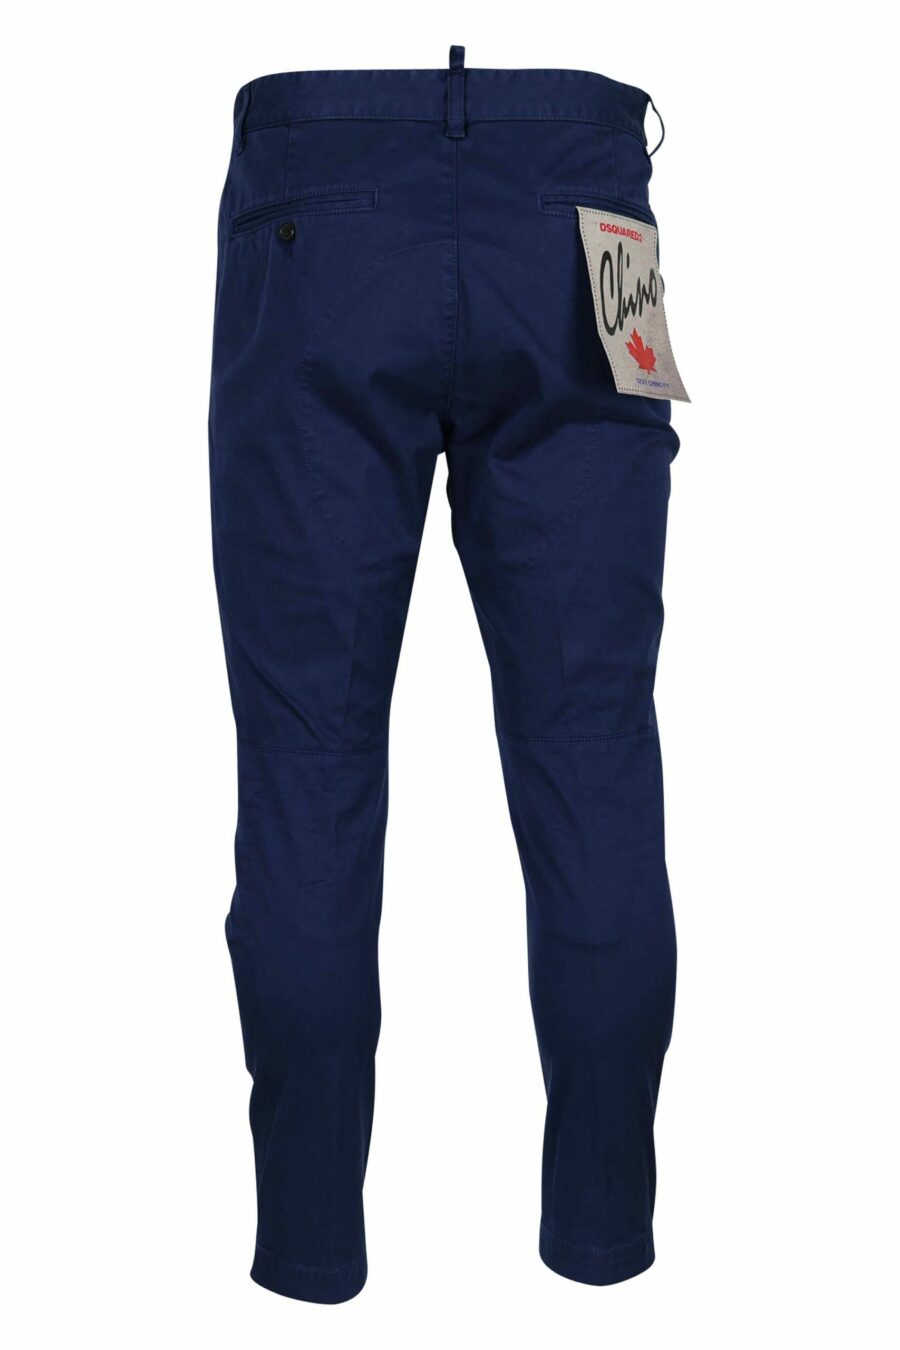 Pantalon bleu foncé "sexy chino" - 8054148321727 2 échelles